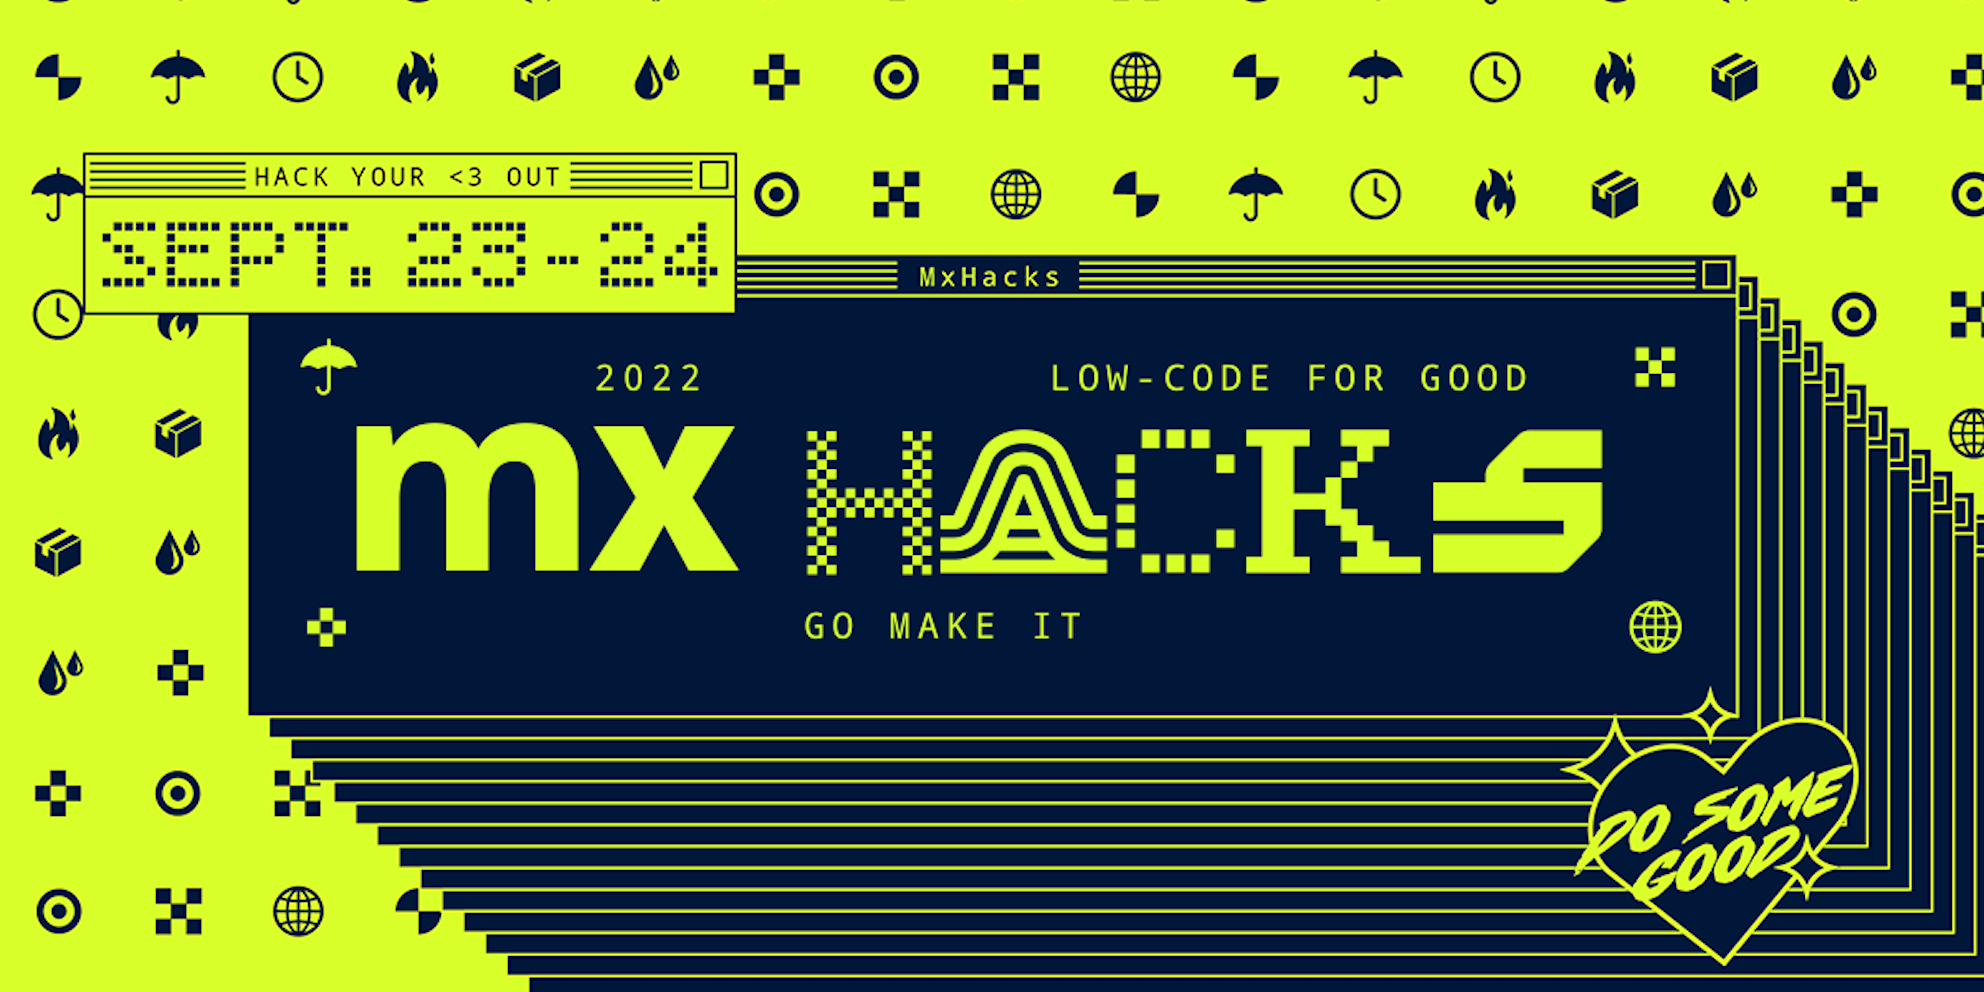 Conclusion Low Code Company doet mee aan Mendix wereldwijde hackathon Low-Code for Good MxHacks 2022